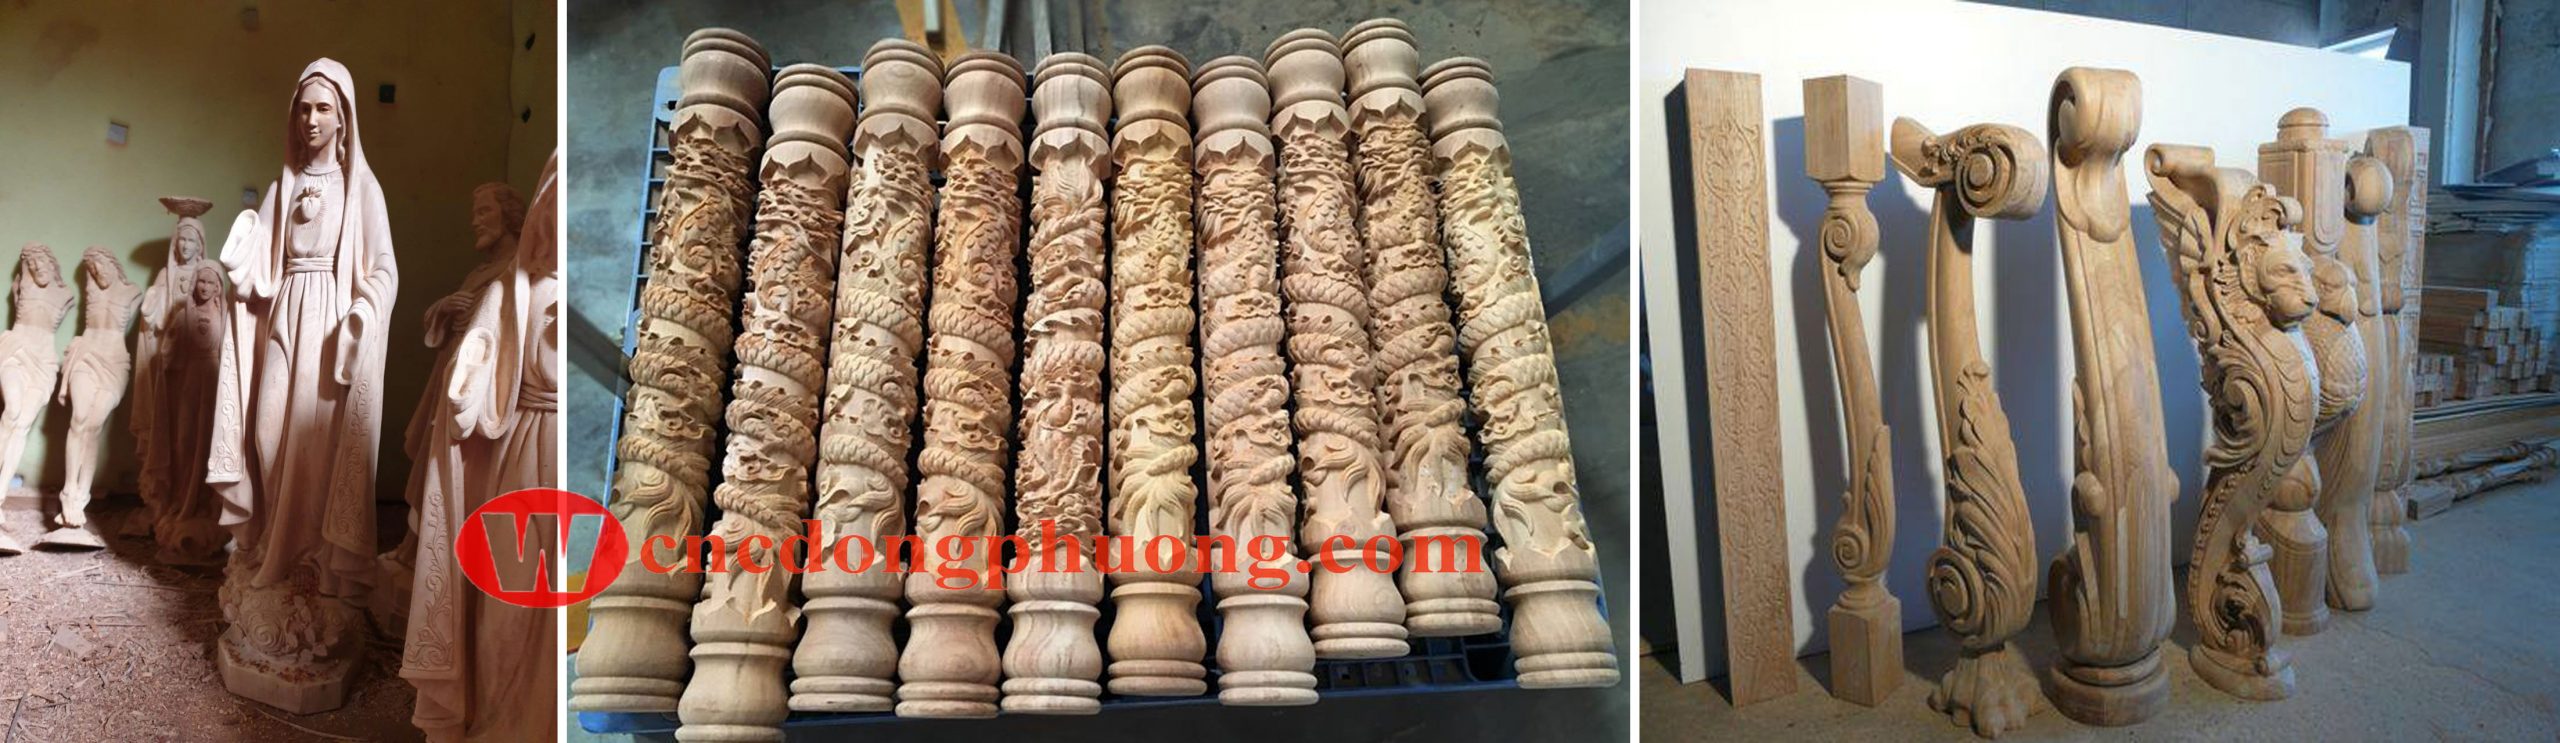 Giá máy đục tượng gỗ 4D tại Bình Định bao nhiêu?2